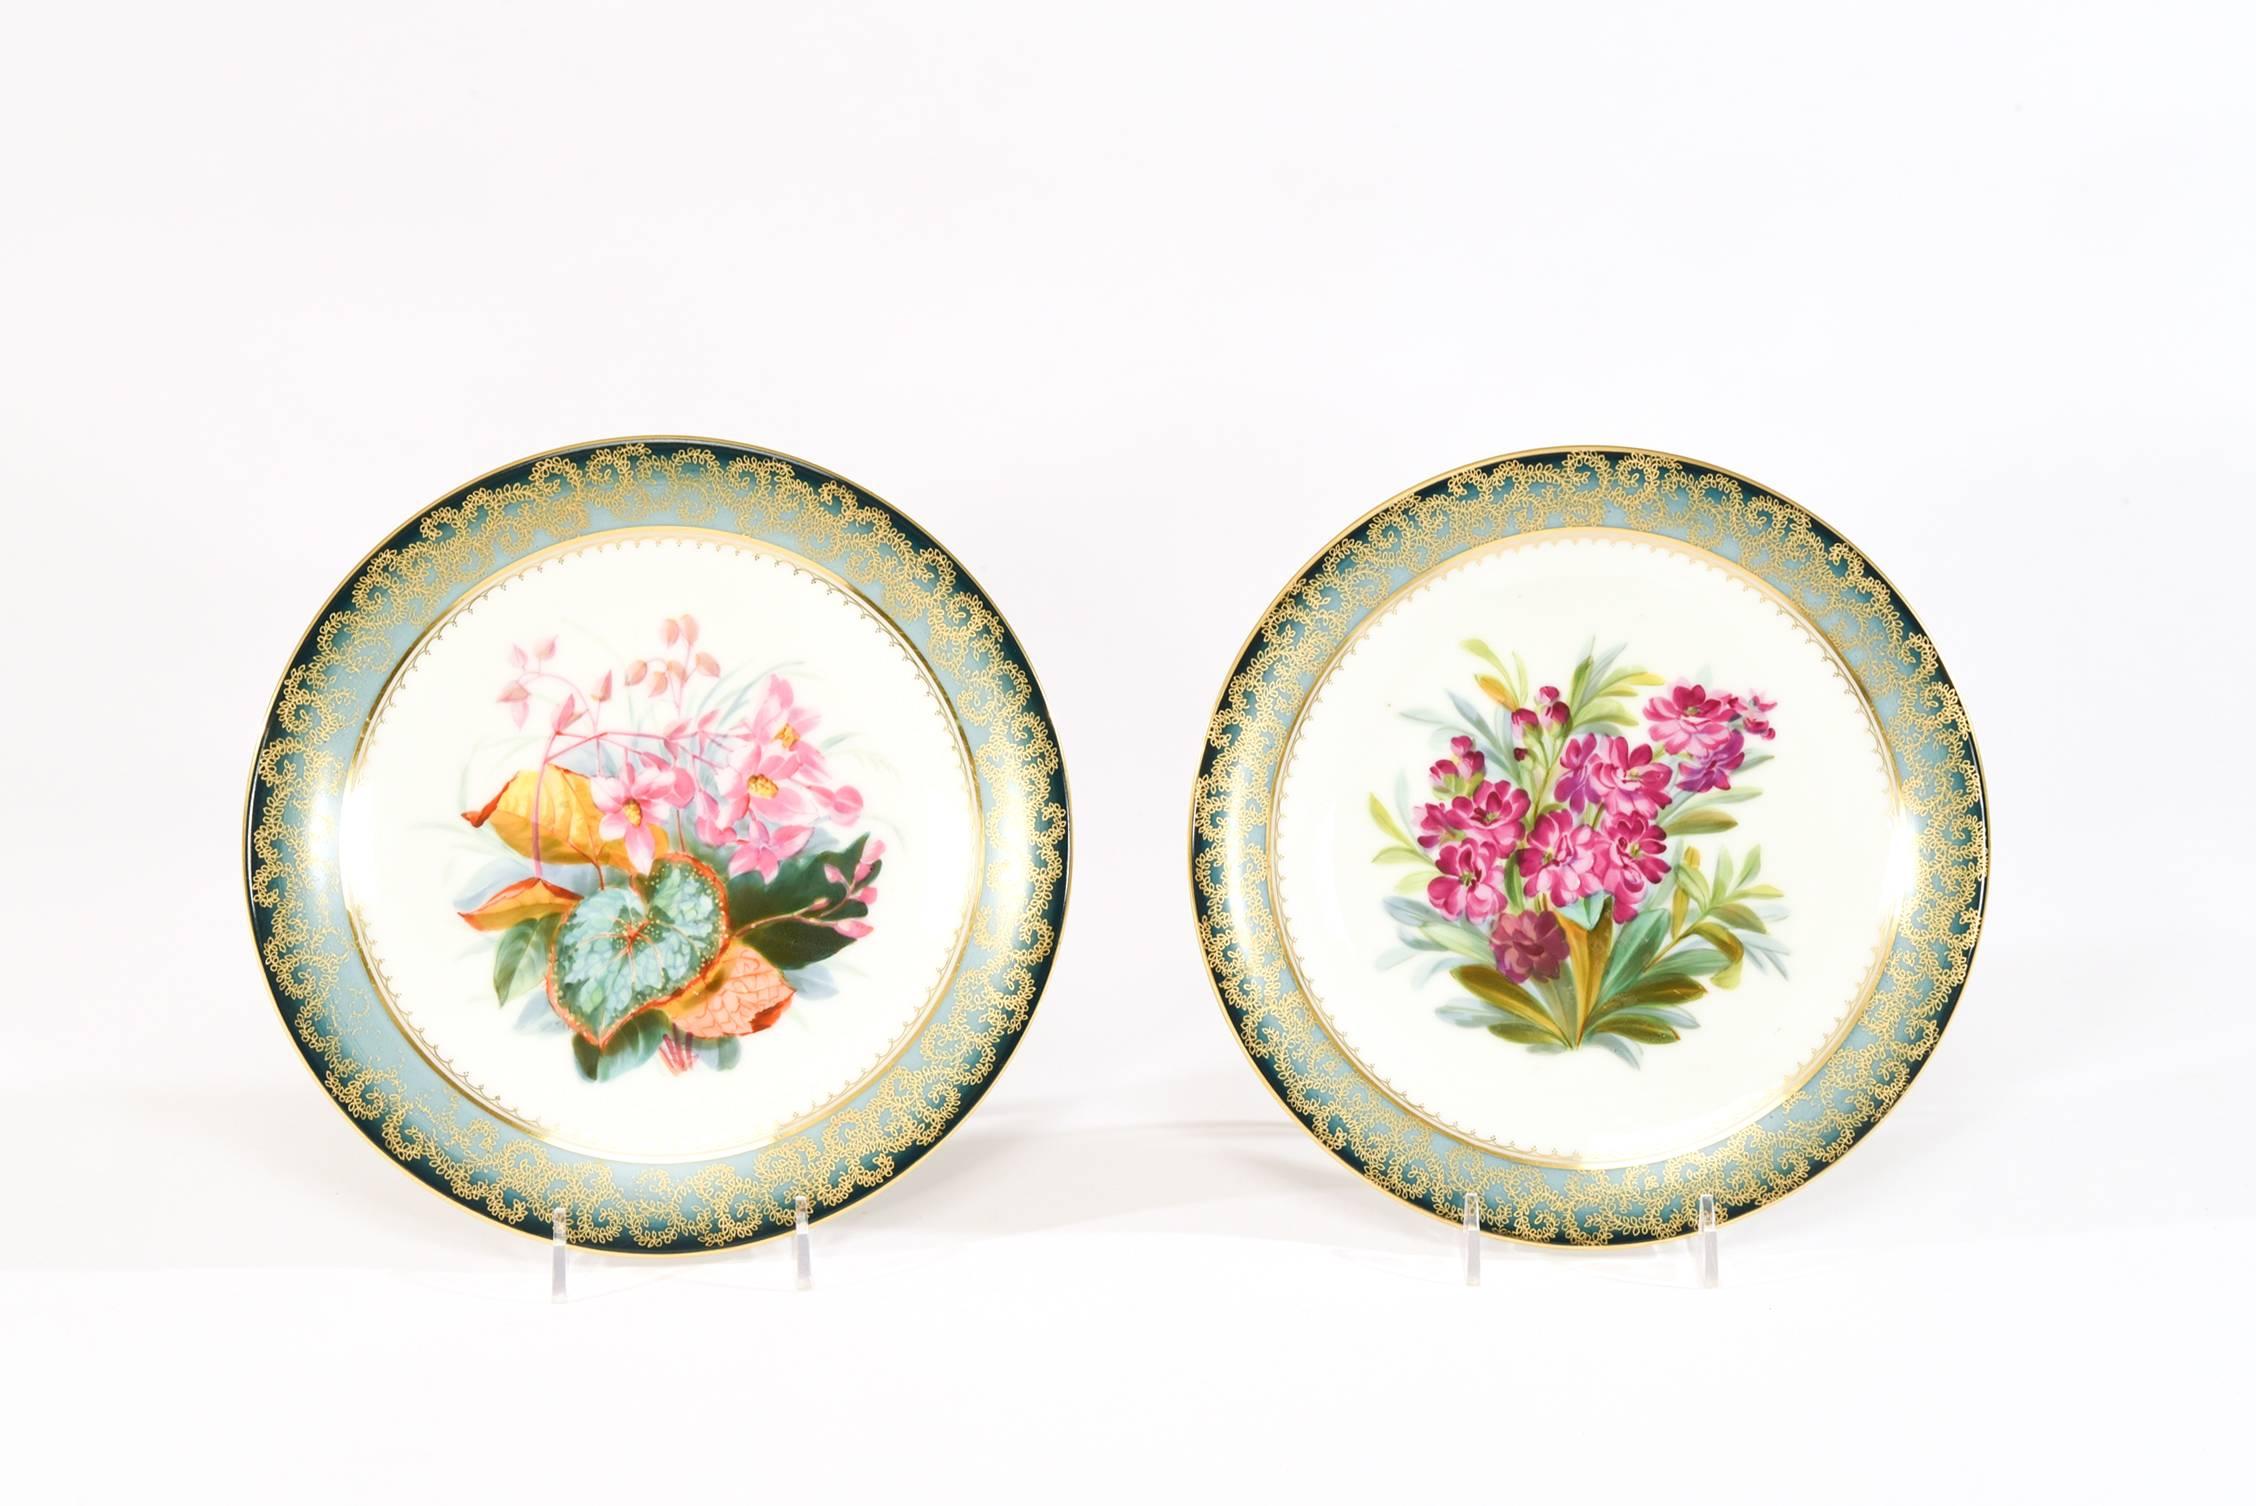 Cet ensemble d'assiettes à dessert botaniques peintes à la main présente un sujet floral vibrant dans une palette variée et chacune est encadrée par une bordure impressionniste inhabituelle qui passe du vert sarcelle foncé et s'estompe subtilement